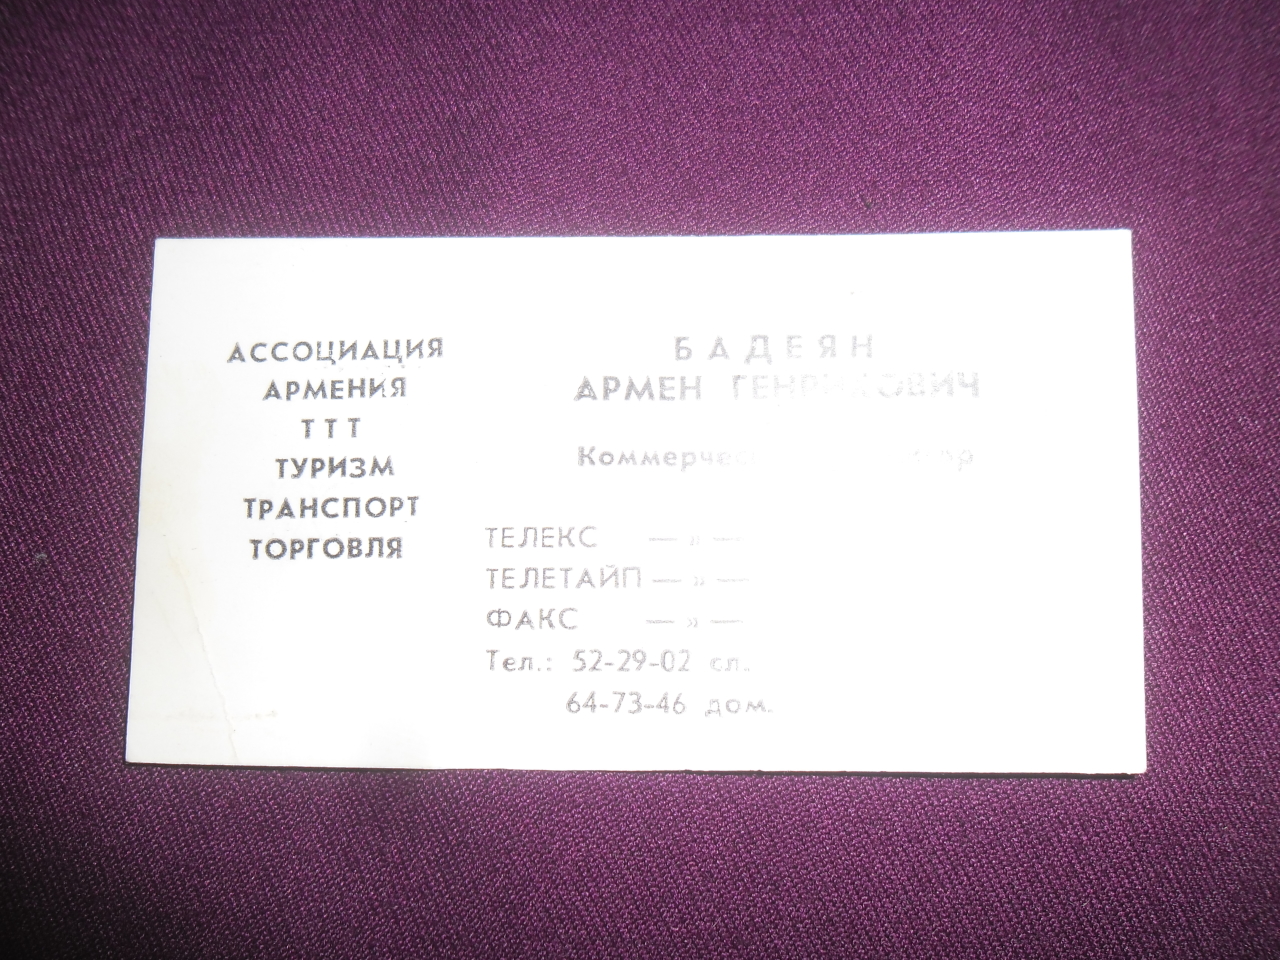 Այցեքարտ՝ Արմեն Հենրիկի Բադեյանի («Եվրոստան -Ույուտ» ֆիրմայի հիմնադիր,գործարար)